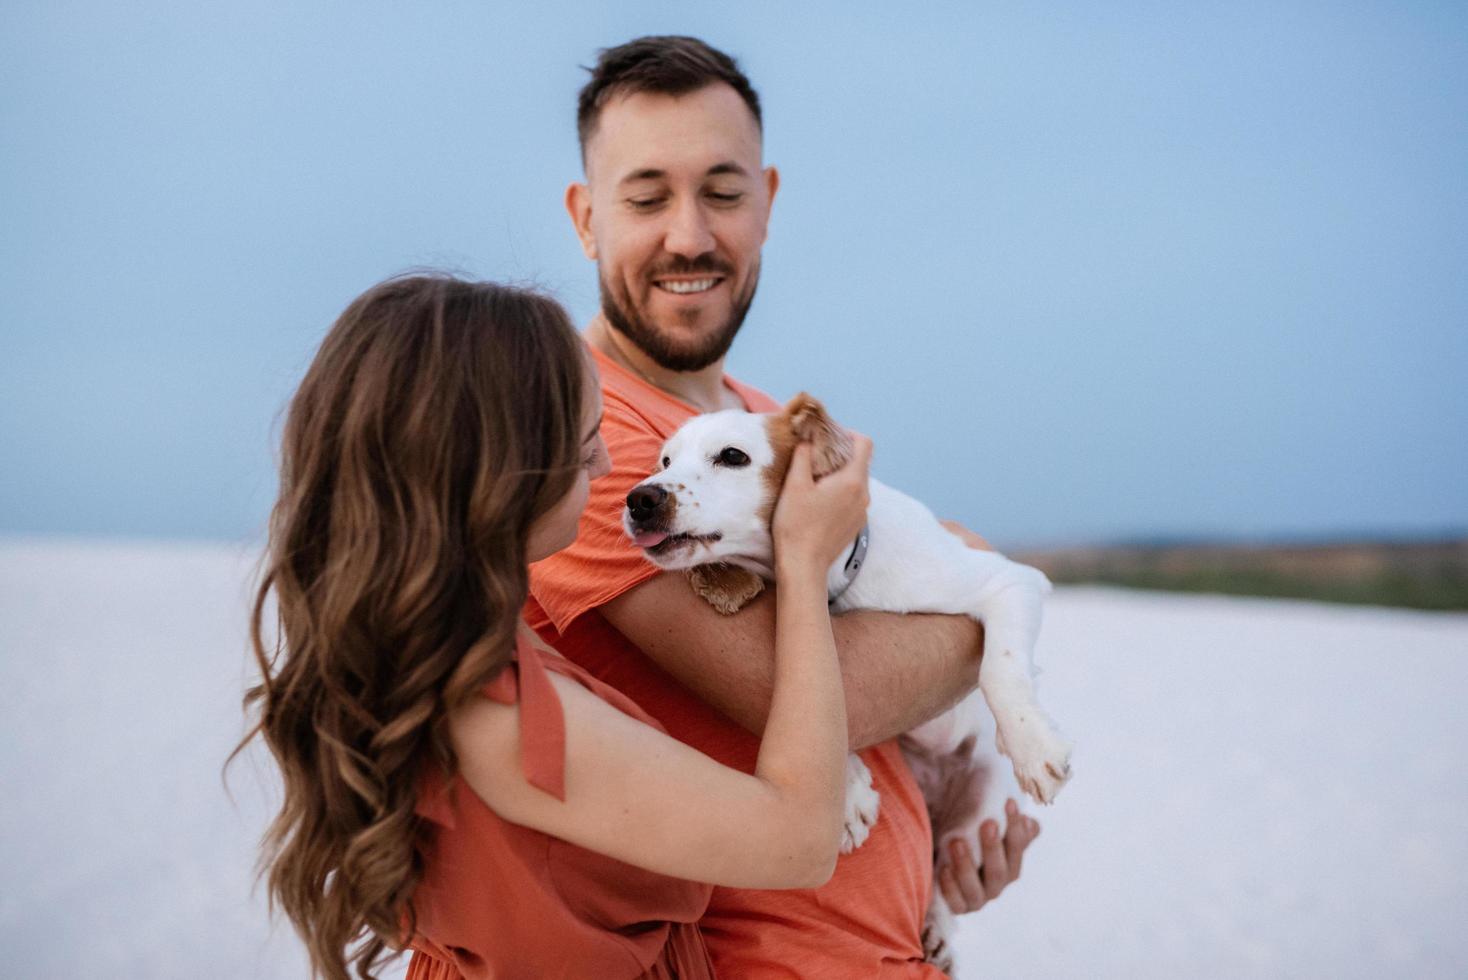 jeune couple en vêtements orange avec chien photo